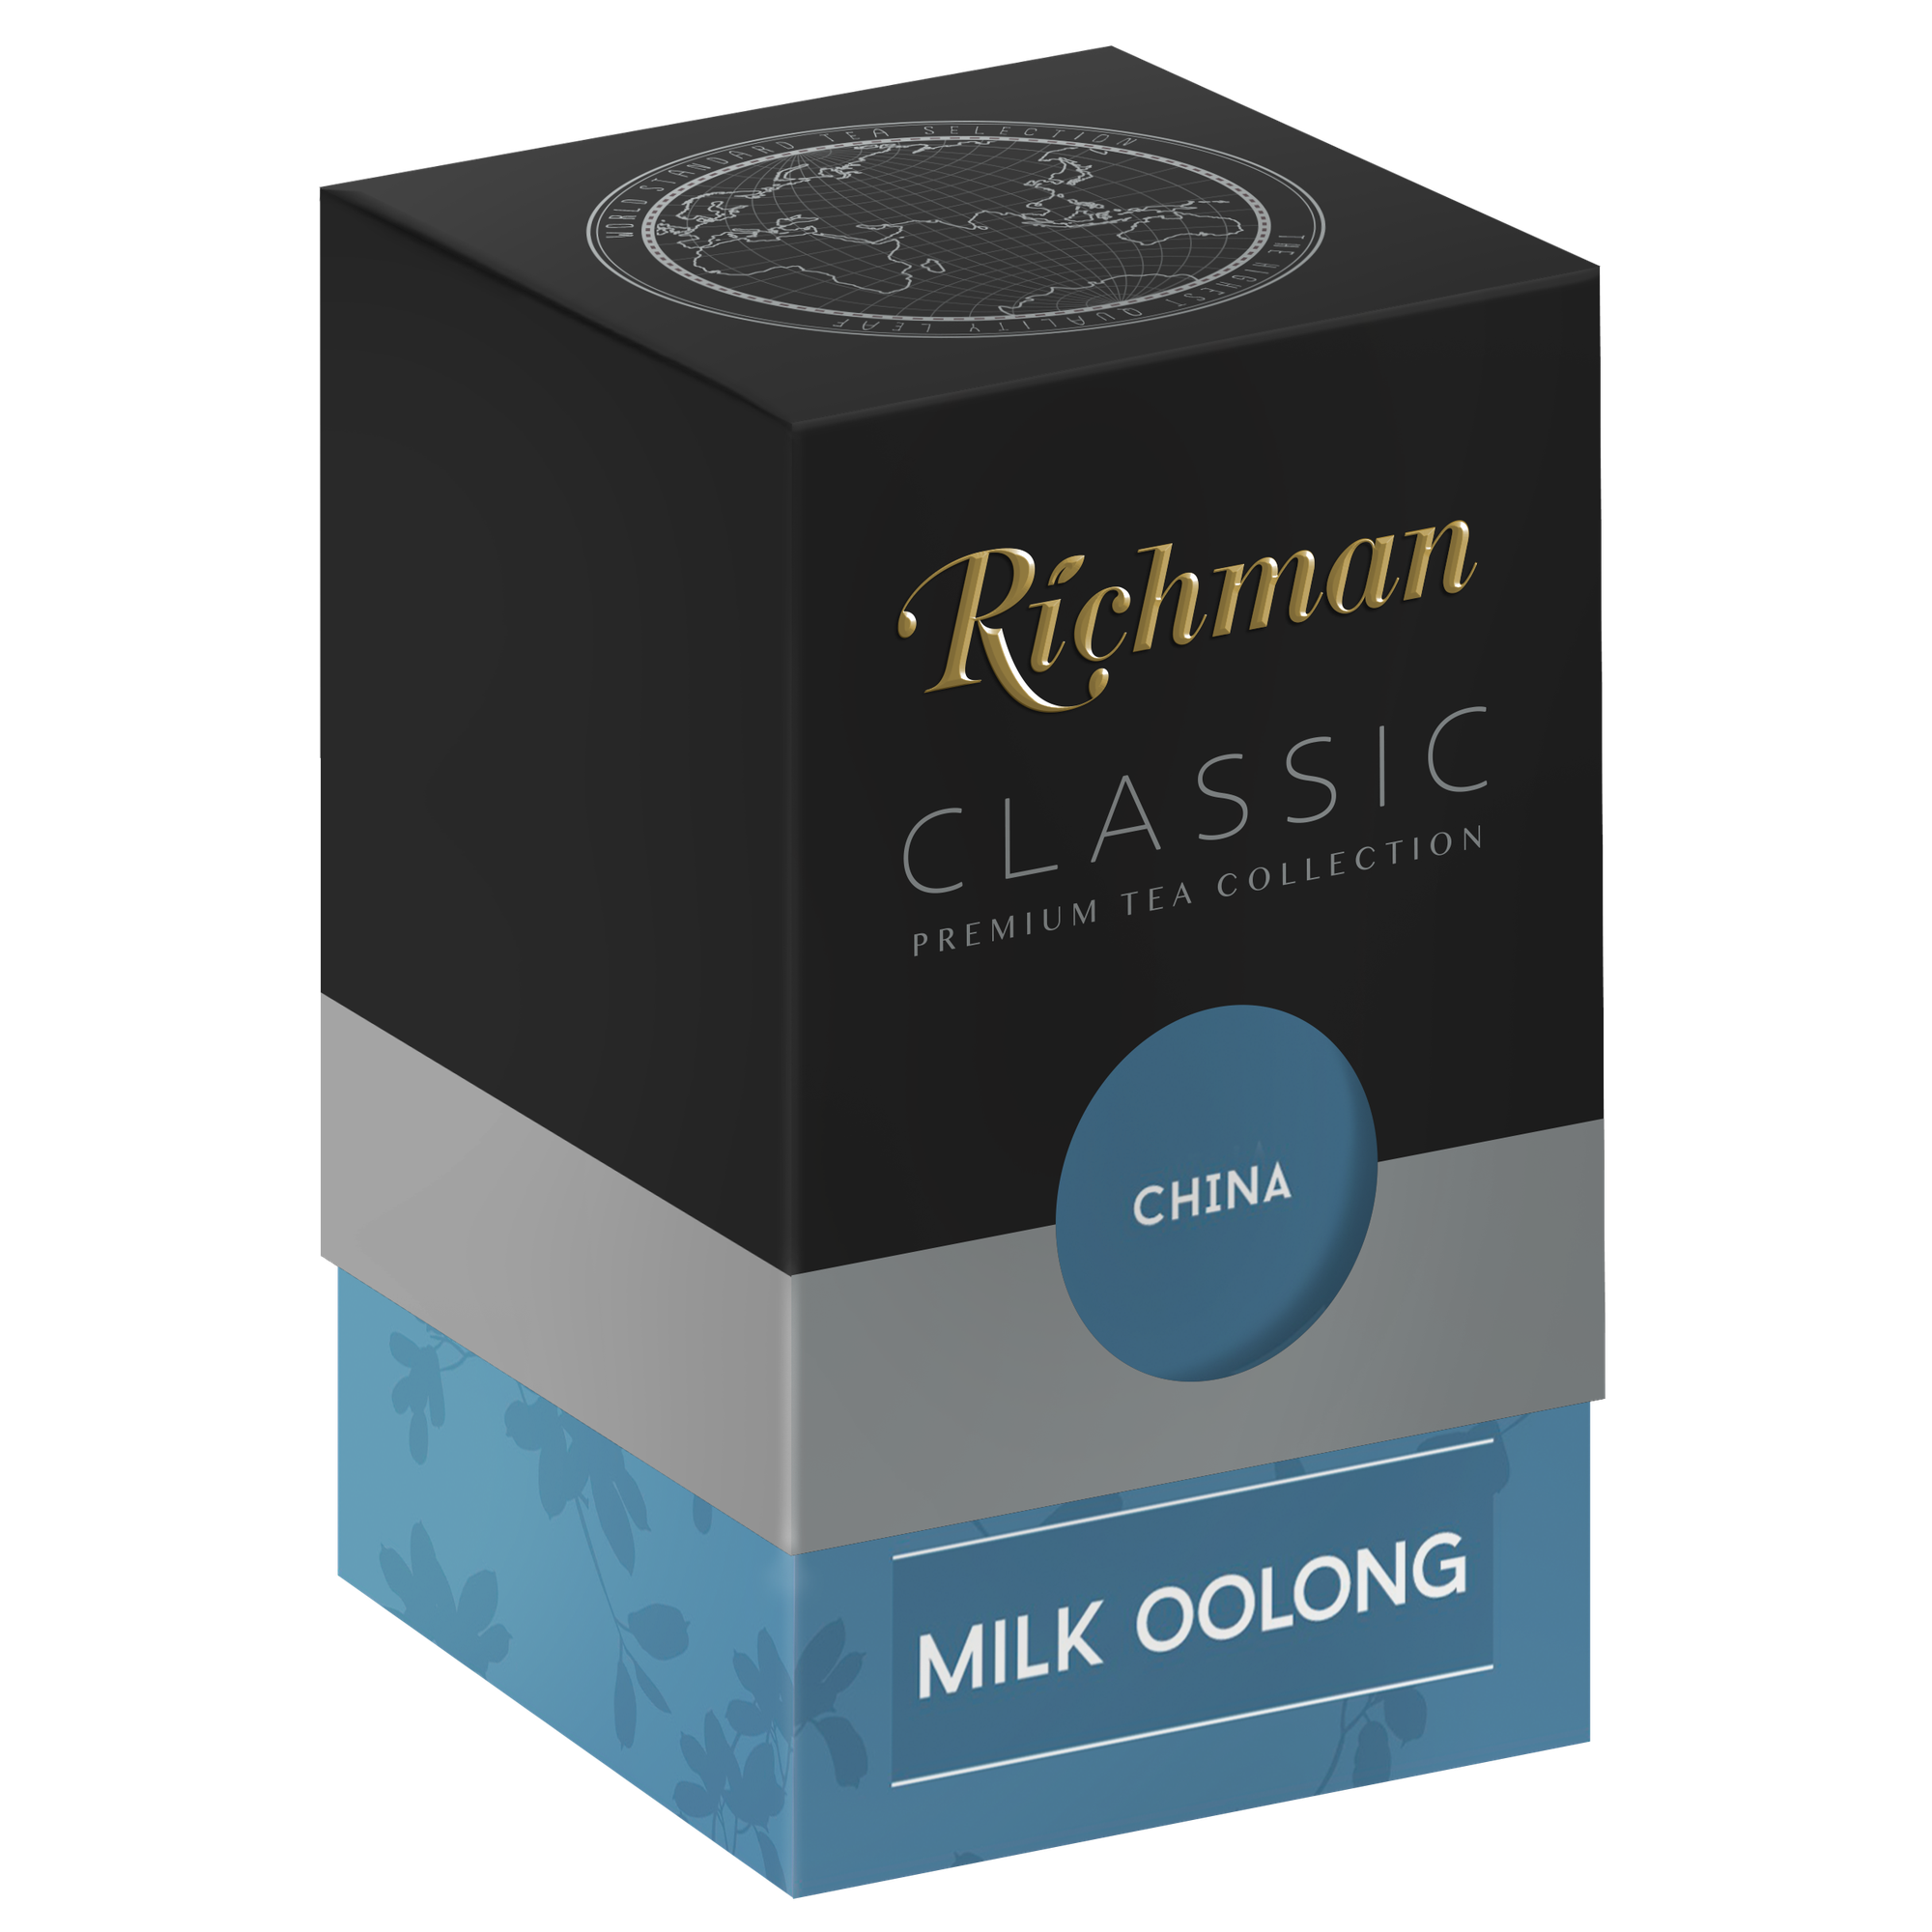 Чай Richman Classic зеленый китайский крупнолистовой, молочный оолонг, 100г китай, картонная коробка